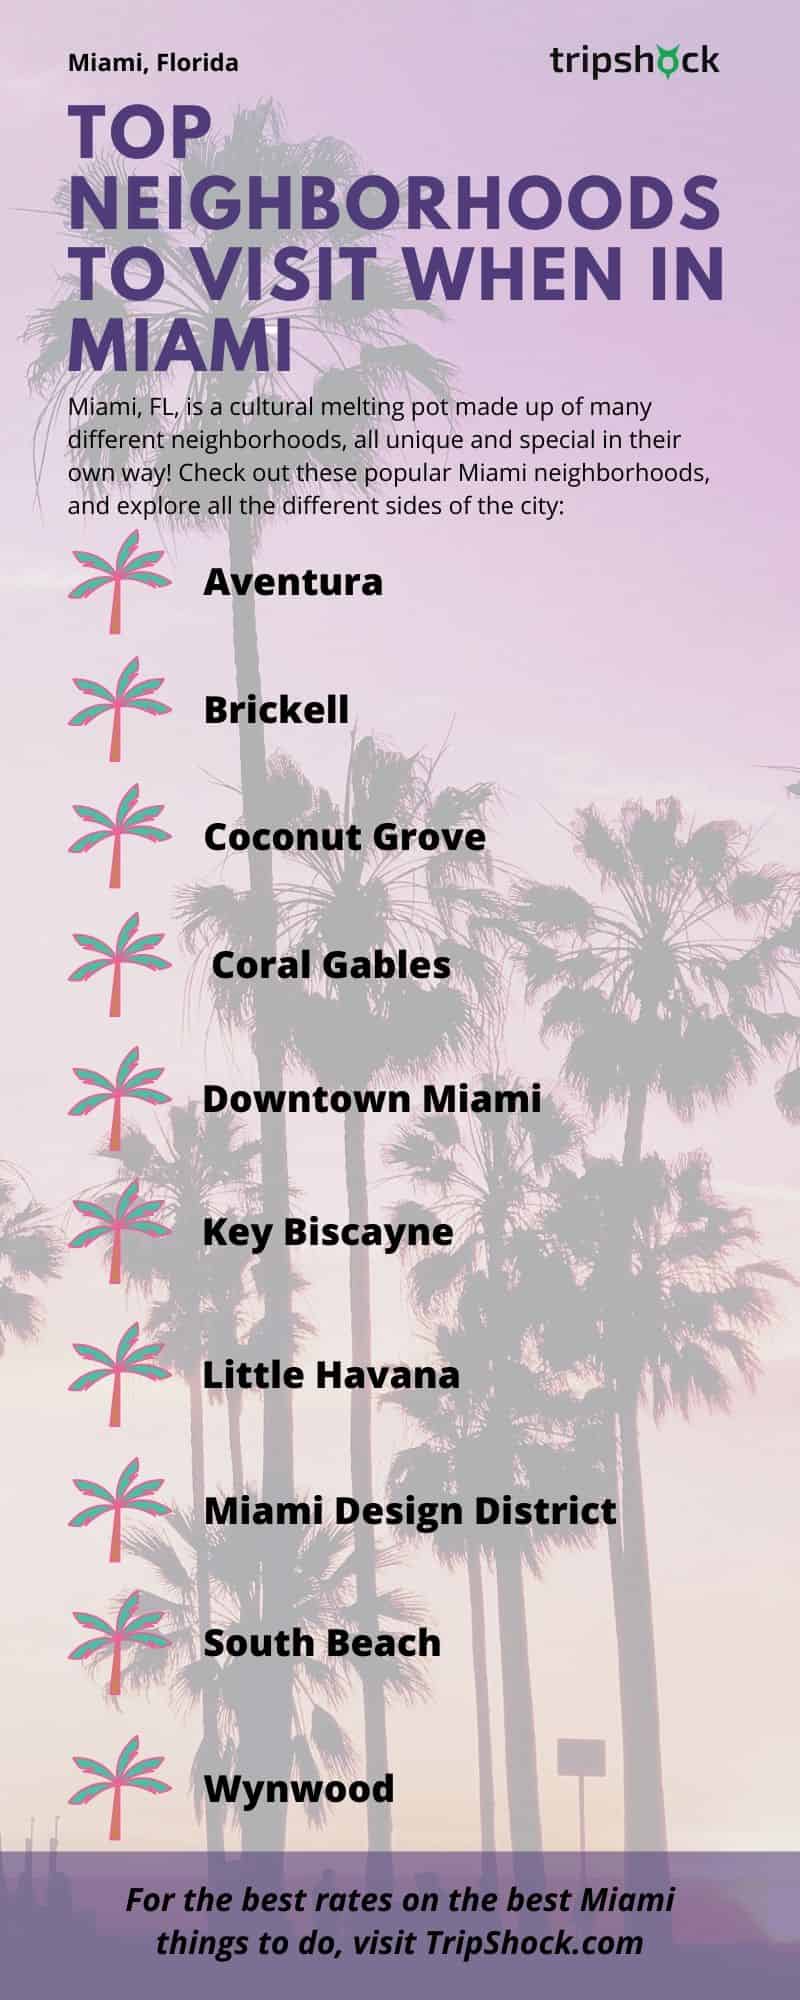 Top Neighborhoods to Visit When in Miami